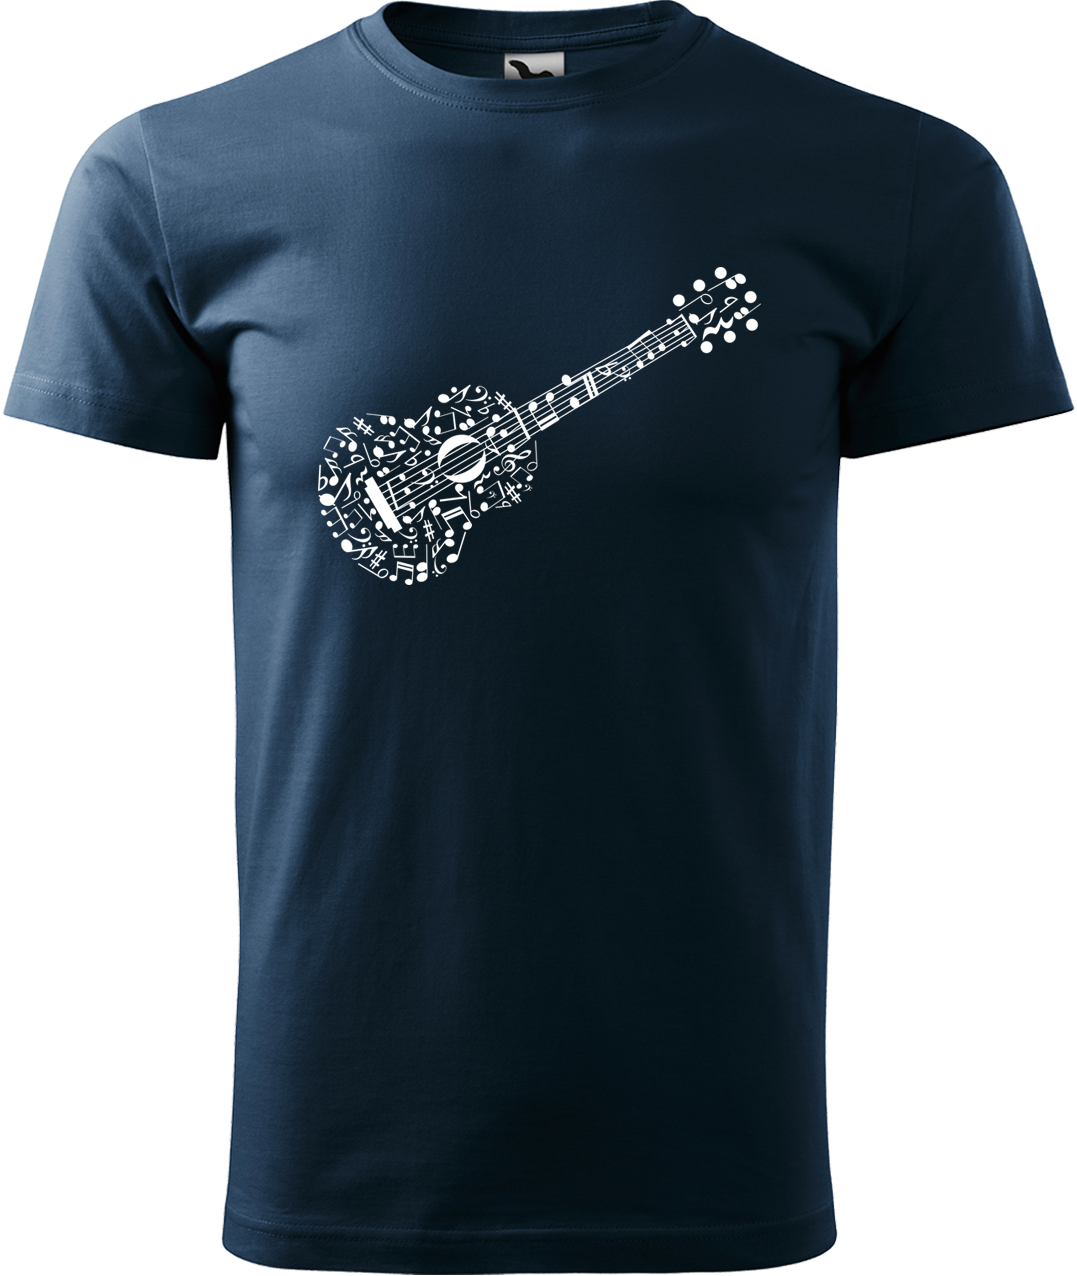 Pánské tričko s kytarou - Kytara z not Velikost: L, Barva: Námořní modrá (02), Střih: pánský